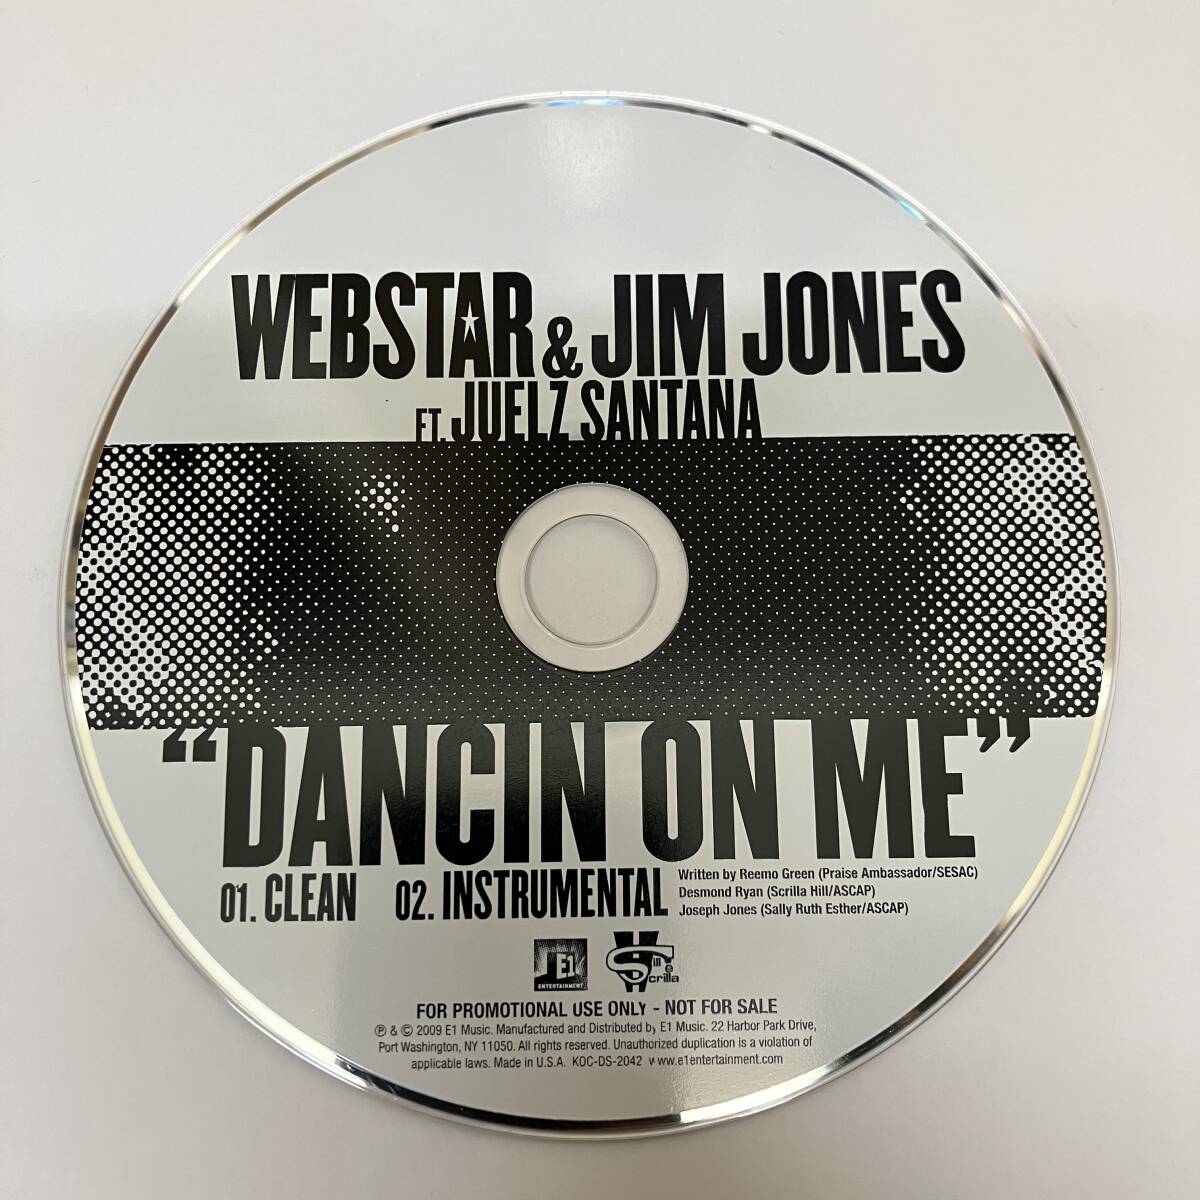 裸3636 HIPHOP,R&B WEBSTAR & JIM JONES - DANCIN ON ME INST,シングル,PROMO盤 CD 中古品_画像1